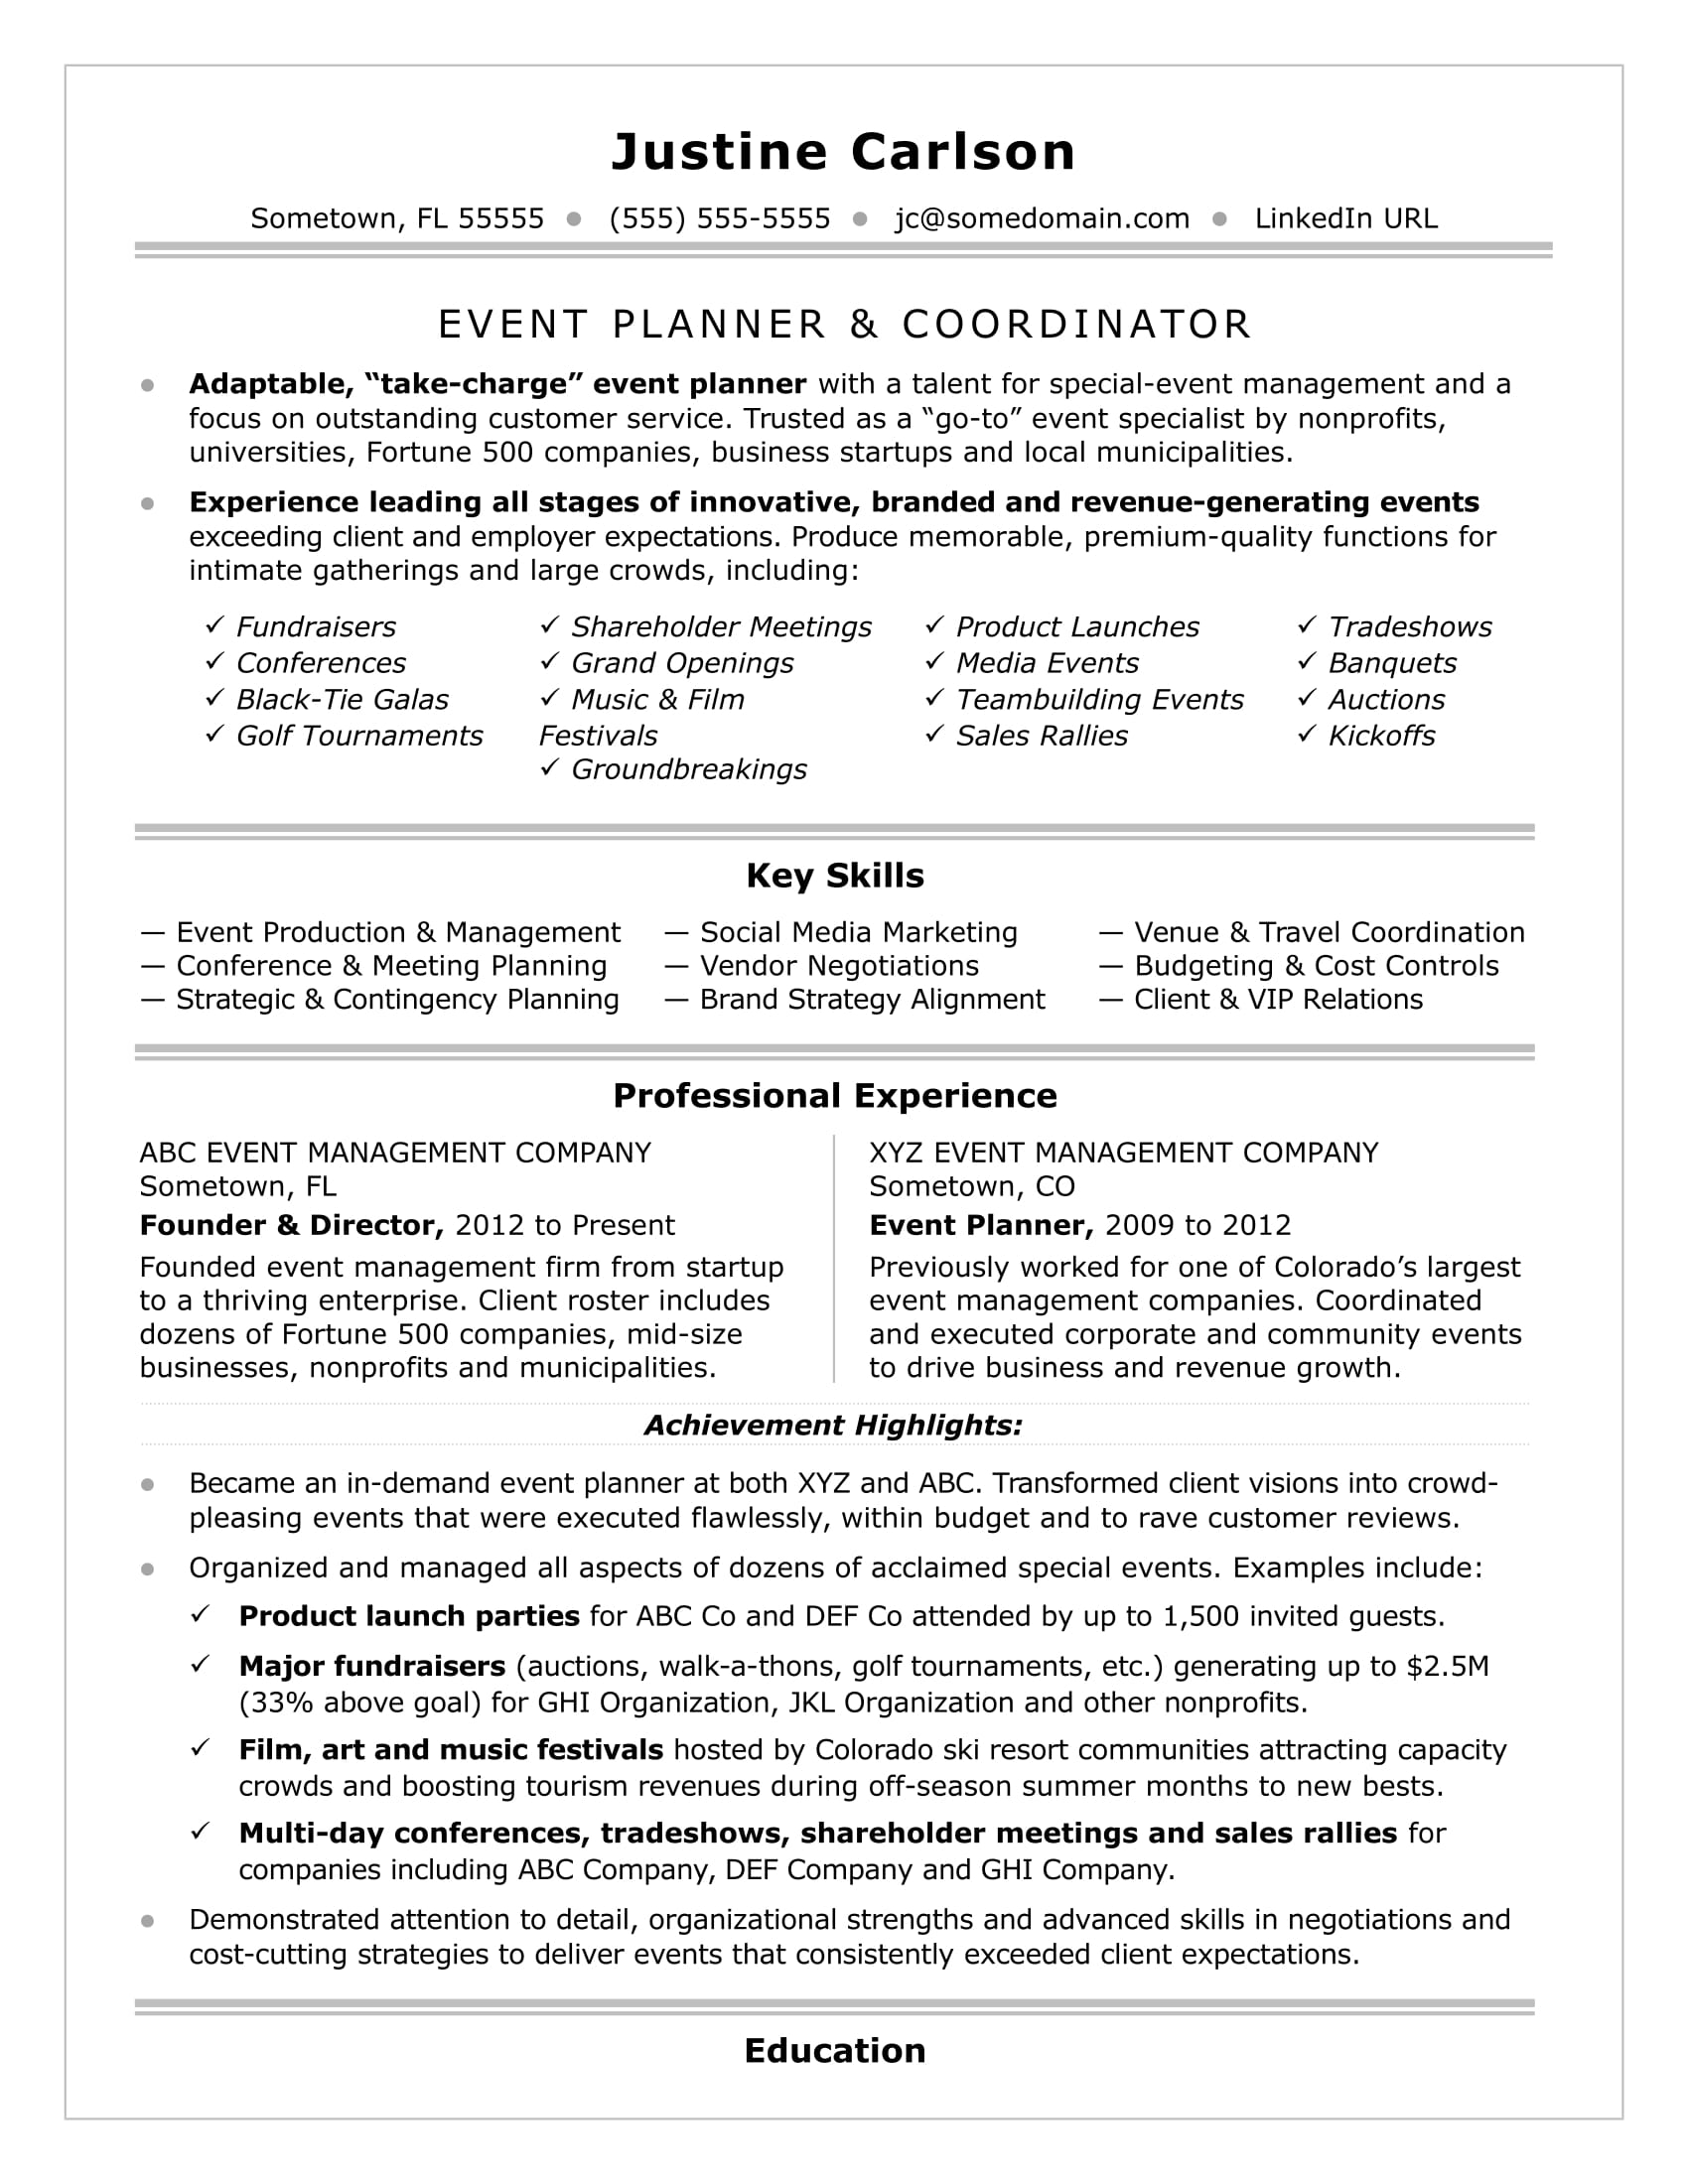 Event Planner Resume Event Planner event planner resume|wikiresume.com